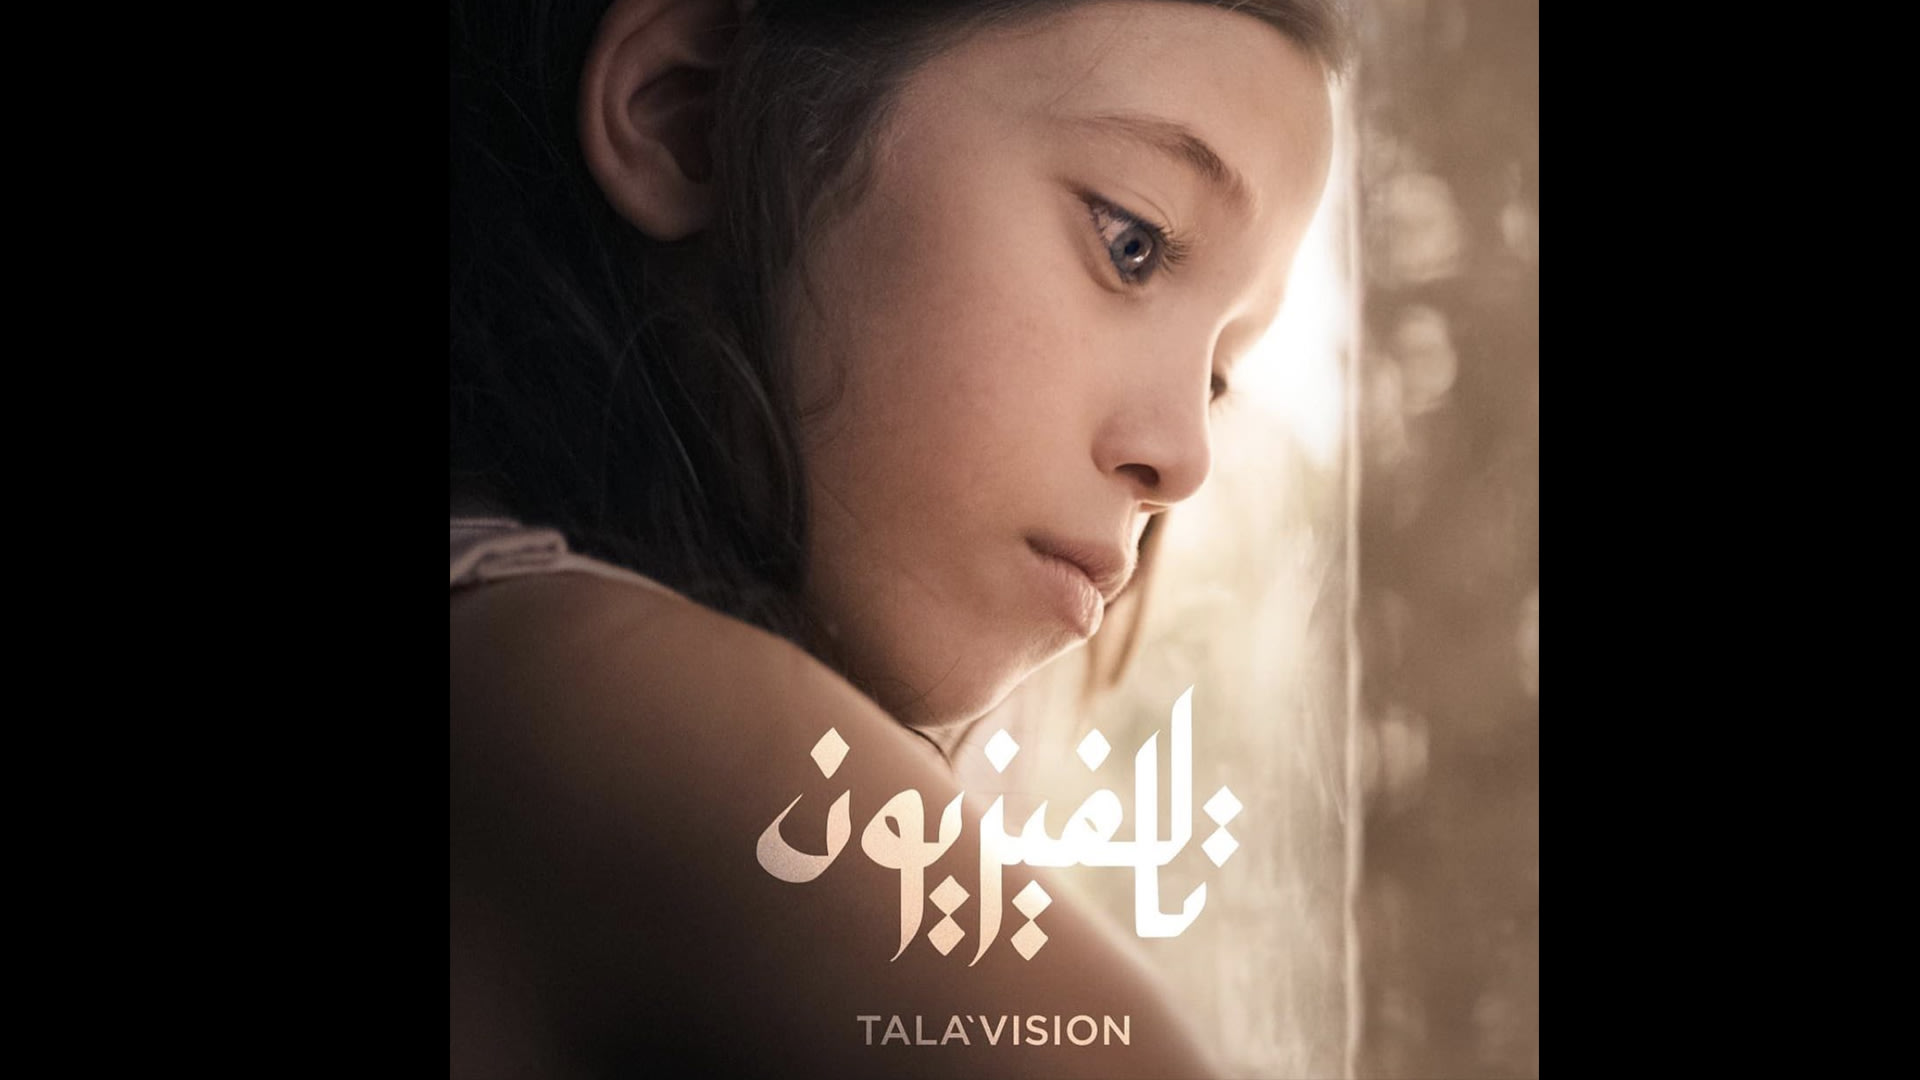 فيلم "تالافيزيون" للمخرج مراد أبو عيشة